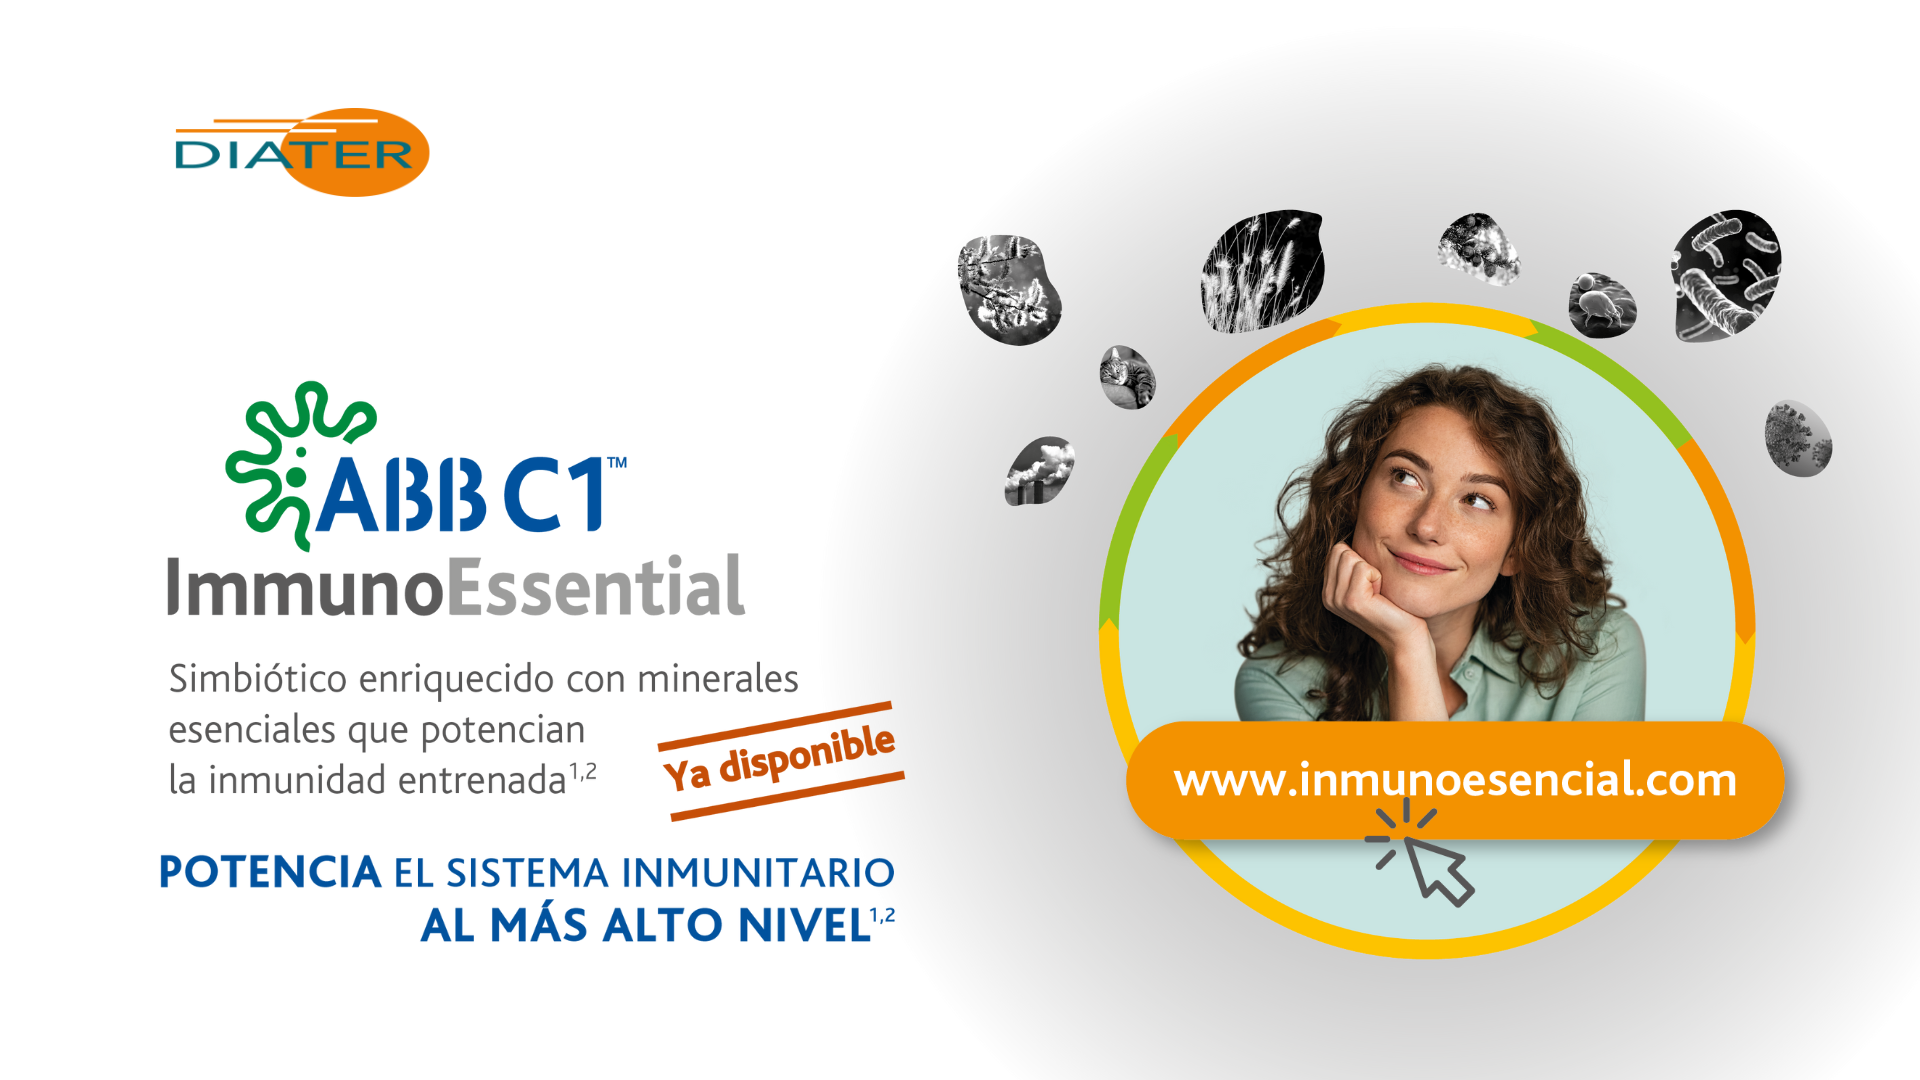 ABB C1TM ImmunoEssential